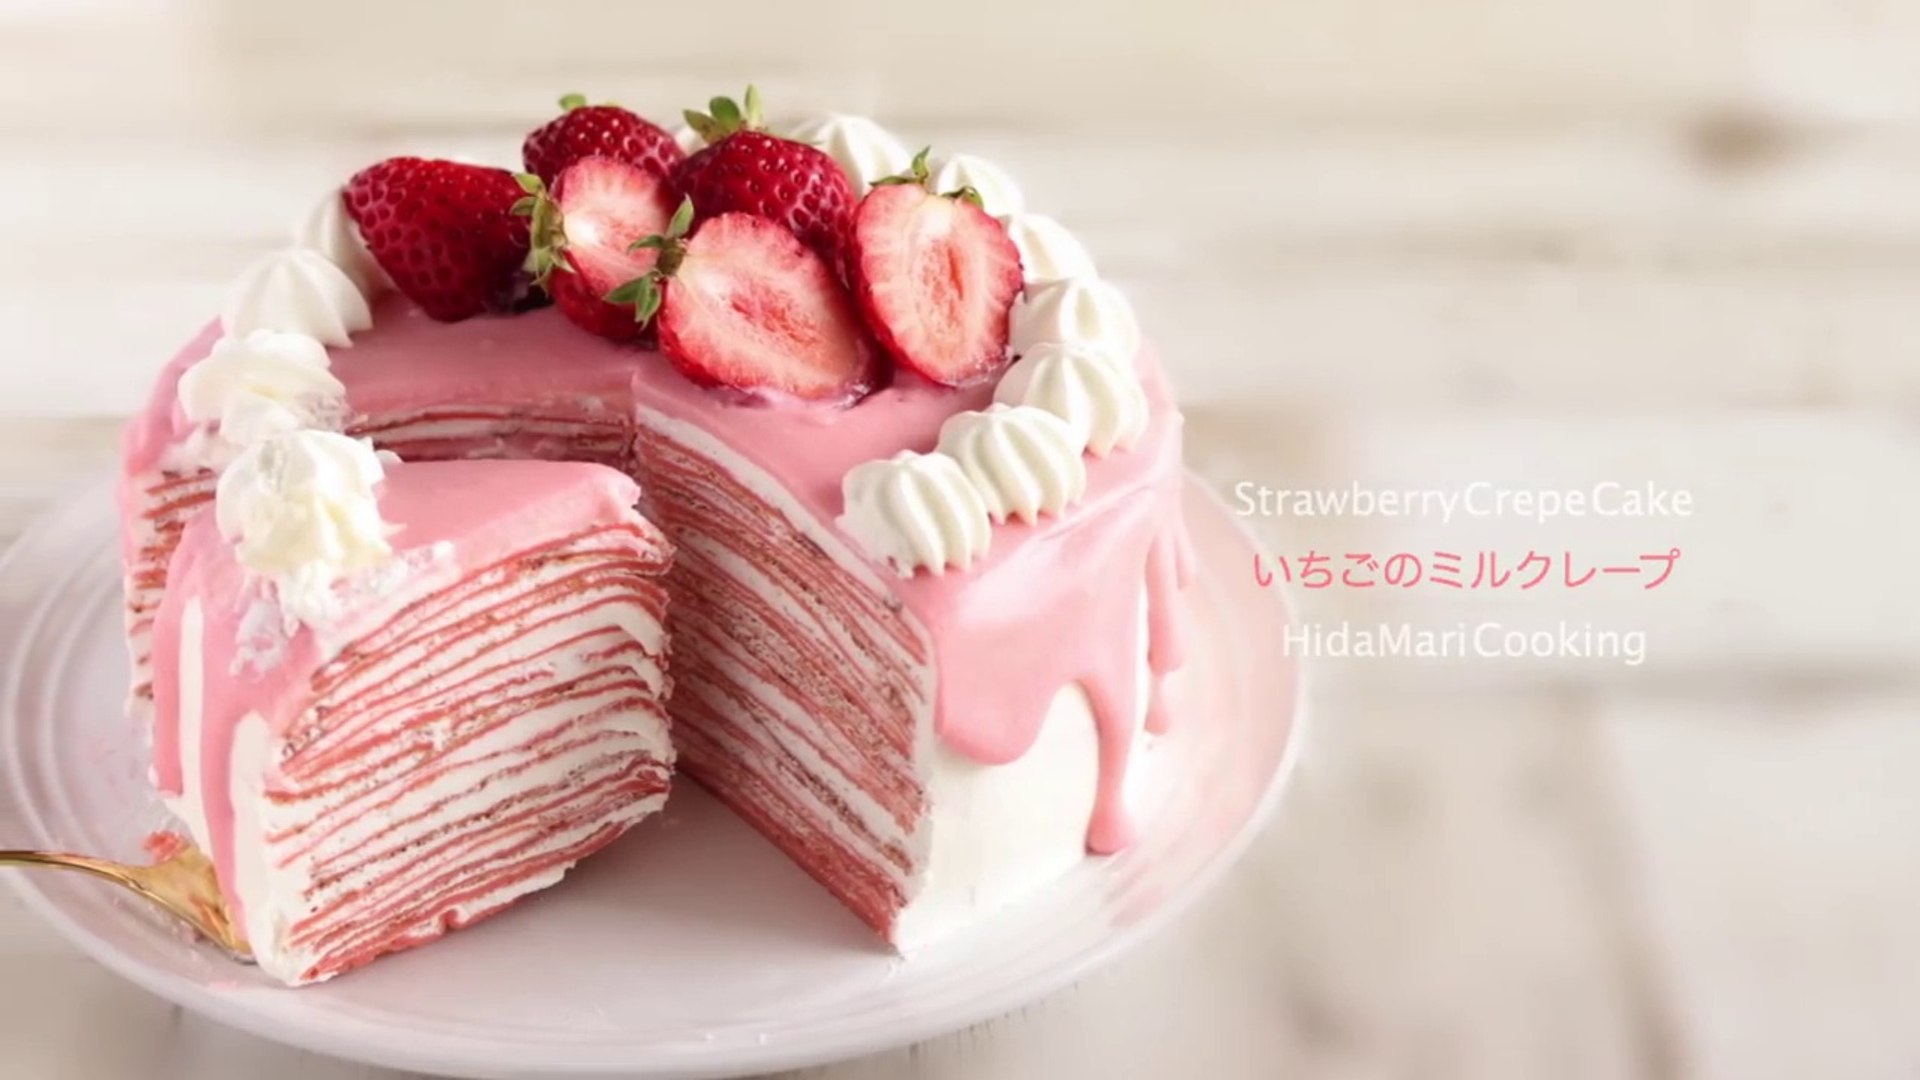 いちごのミルクレープの作り方 Strawberry Crepe Cake Hidamari Cooking Video Dailymotion